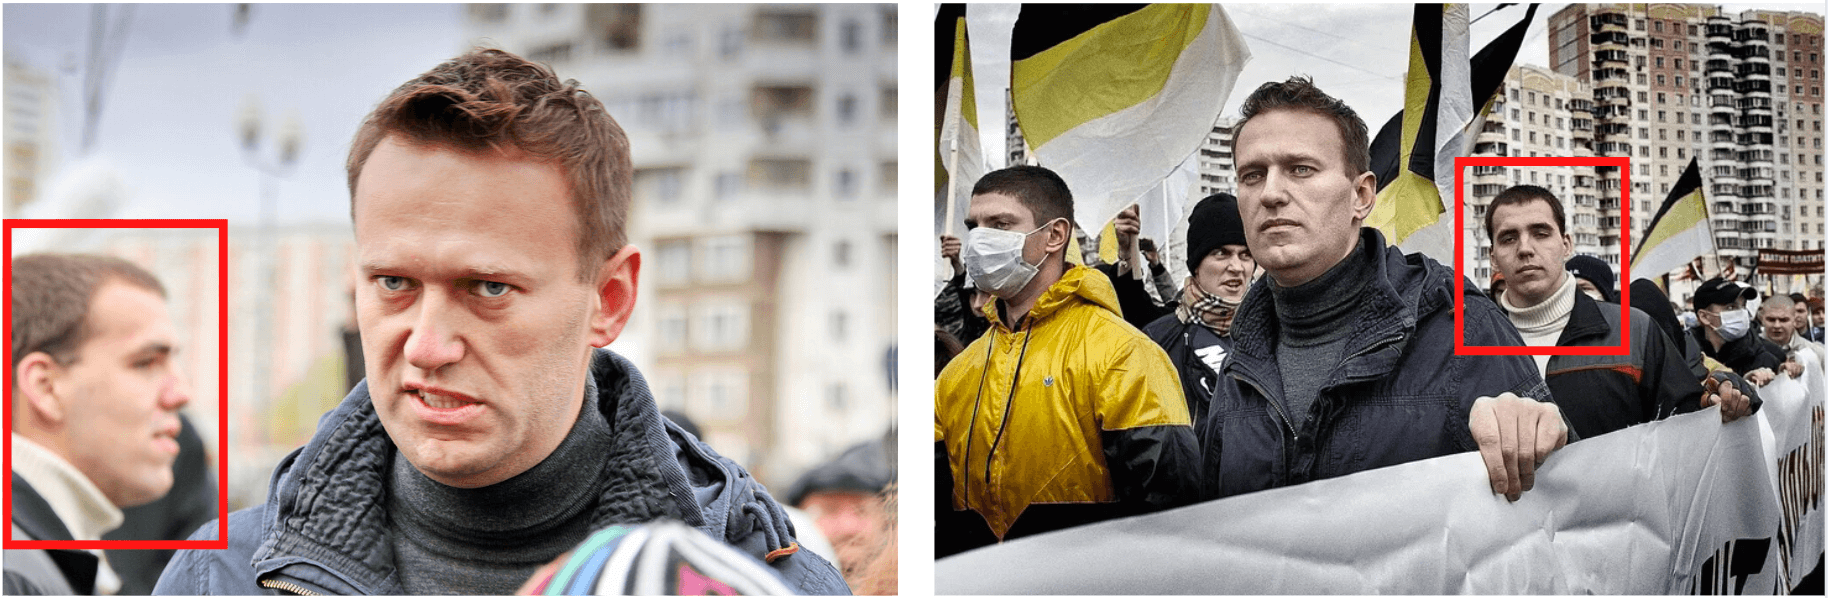 Das Gesicht von Nawalny (links) wurde für die Fotomontage genutzt.